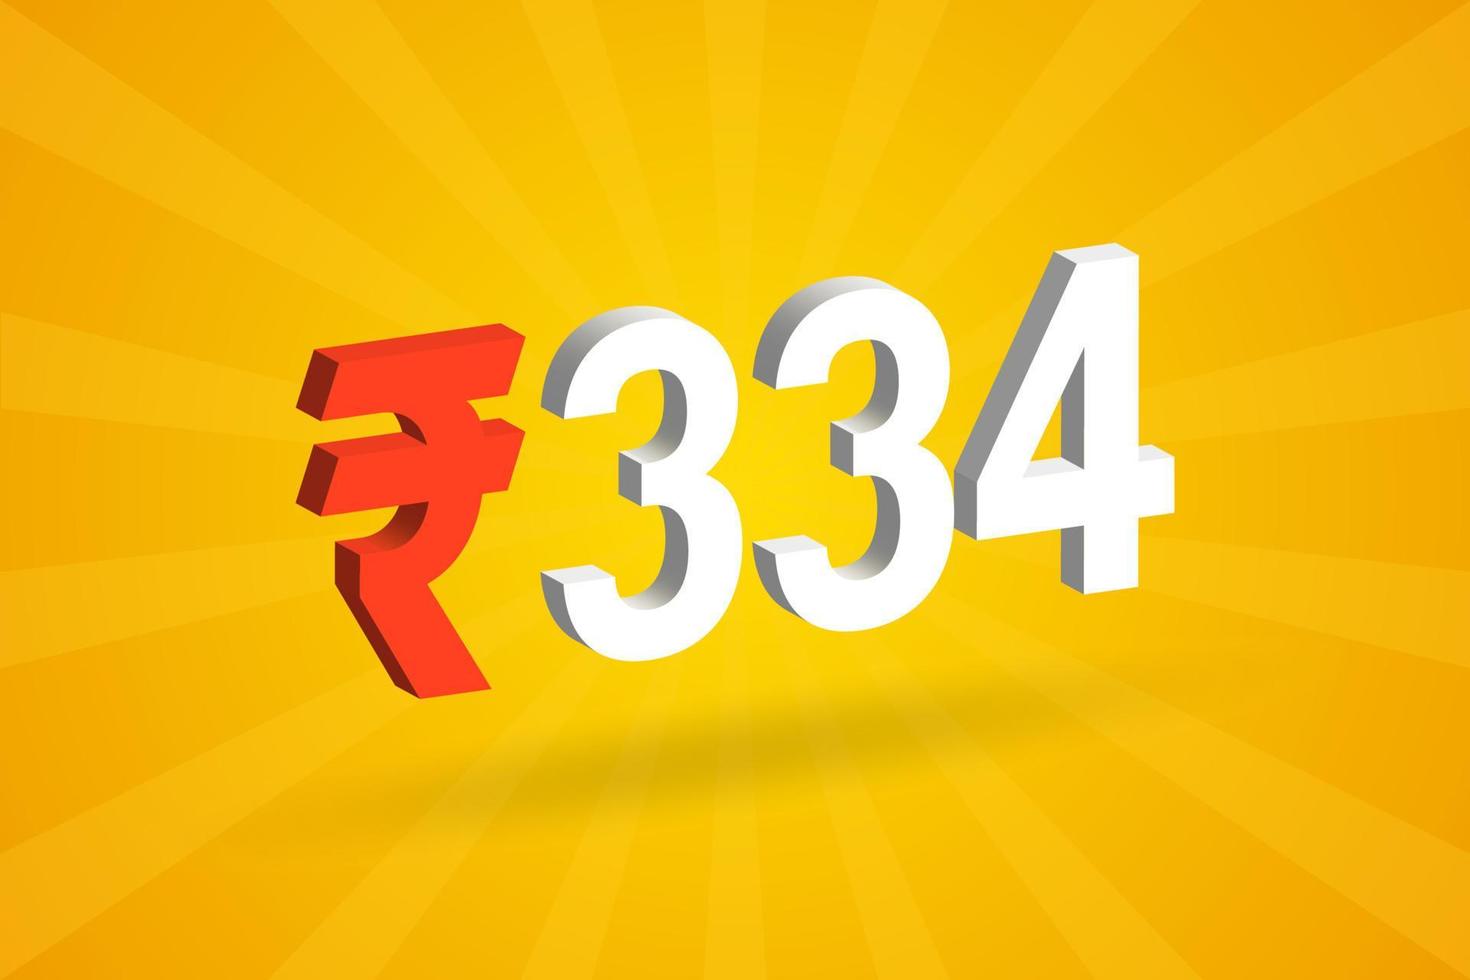 Image vectorielle de texte en gras symbole 3d roupie 334. 3d 334 roupie indienne monnaie signe illustration vectorielle vecteur